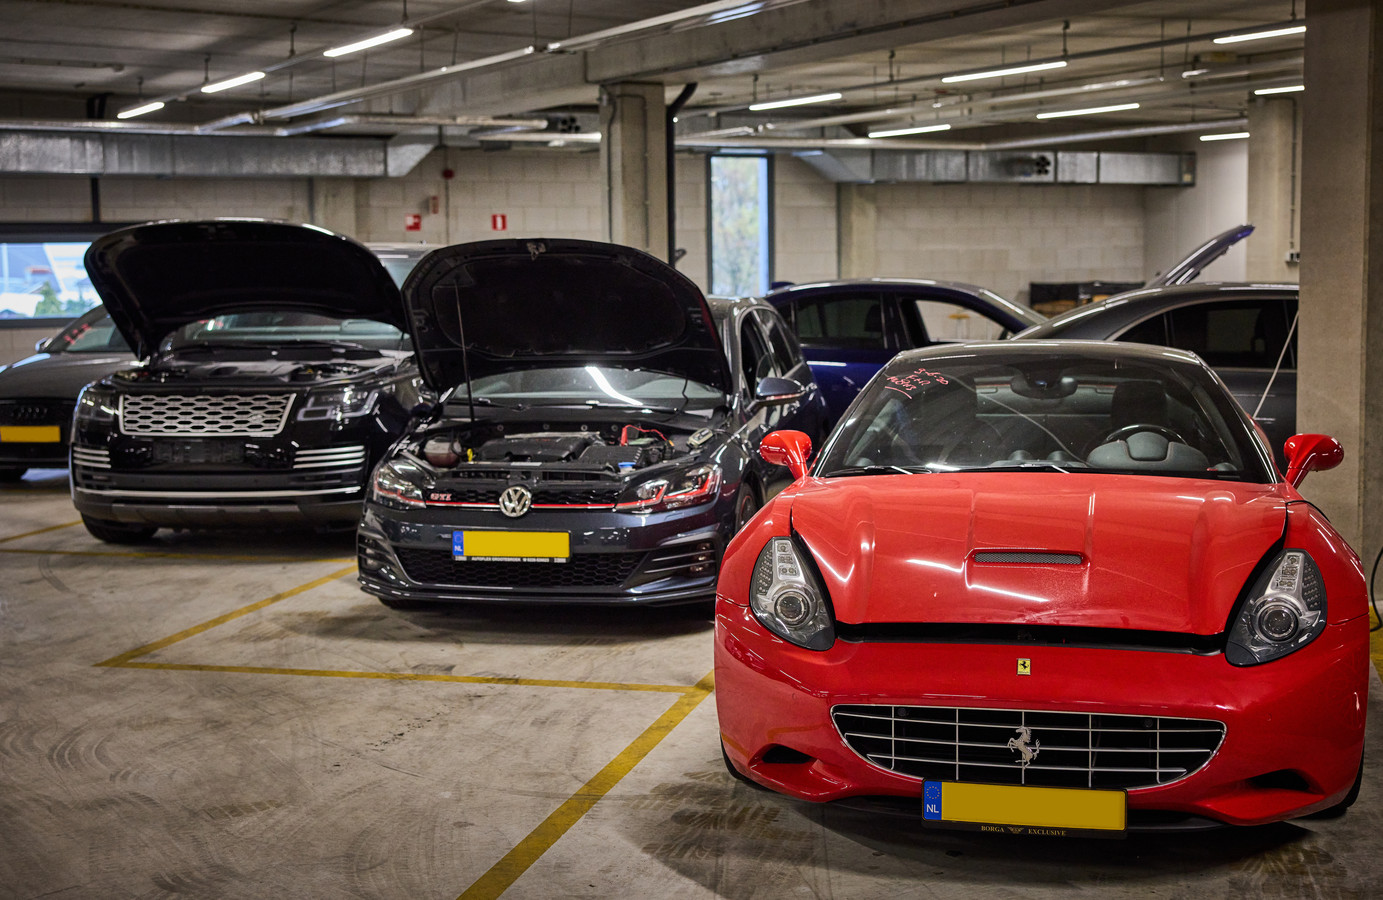 Afgelopen jaar pakte justitie in de Rotterdamse regio voor zo’n 20 miljoen euro - iets minder dan tien procent van het landelijke totaal - aan bezittingen af. Het ging met name om contanten, auto's en sieraden.